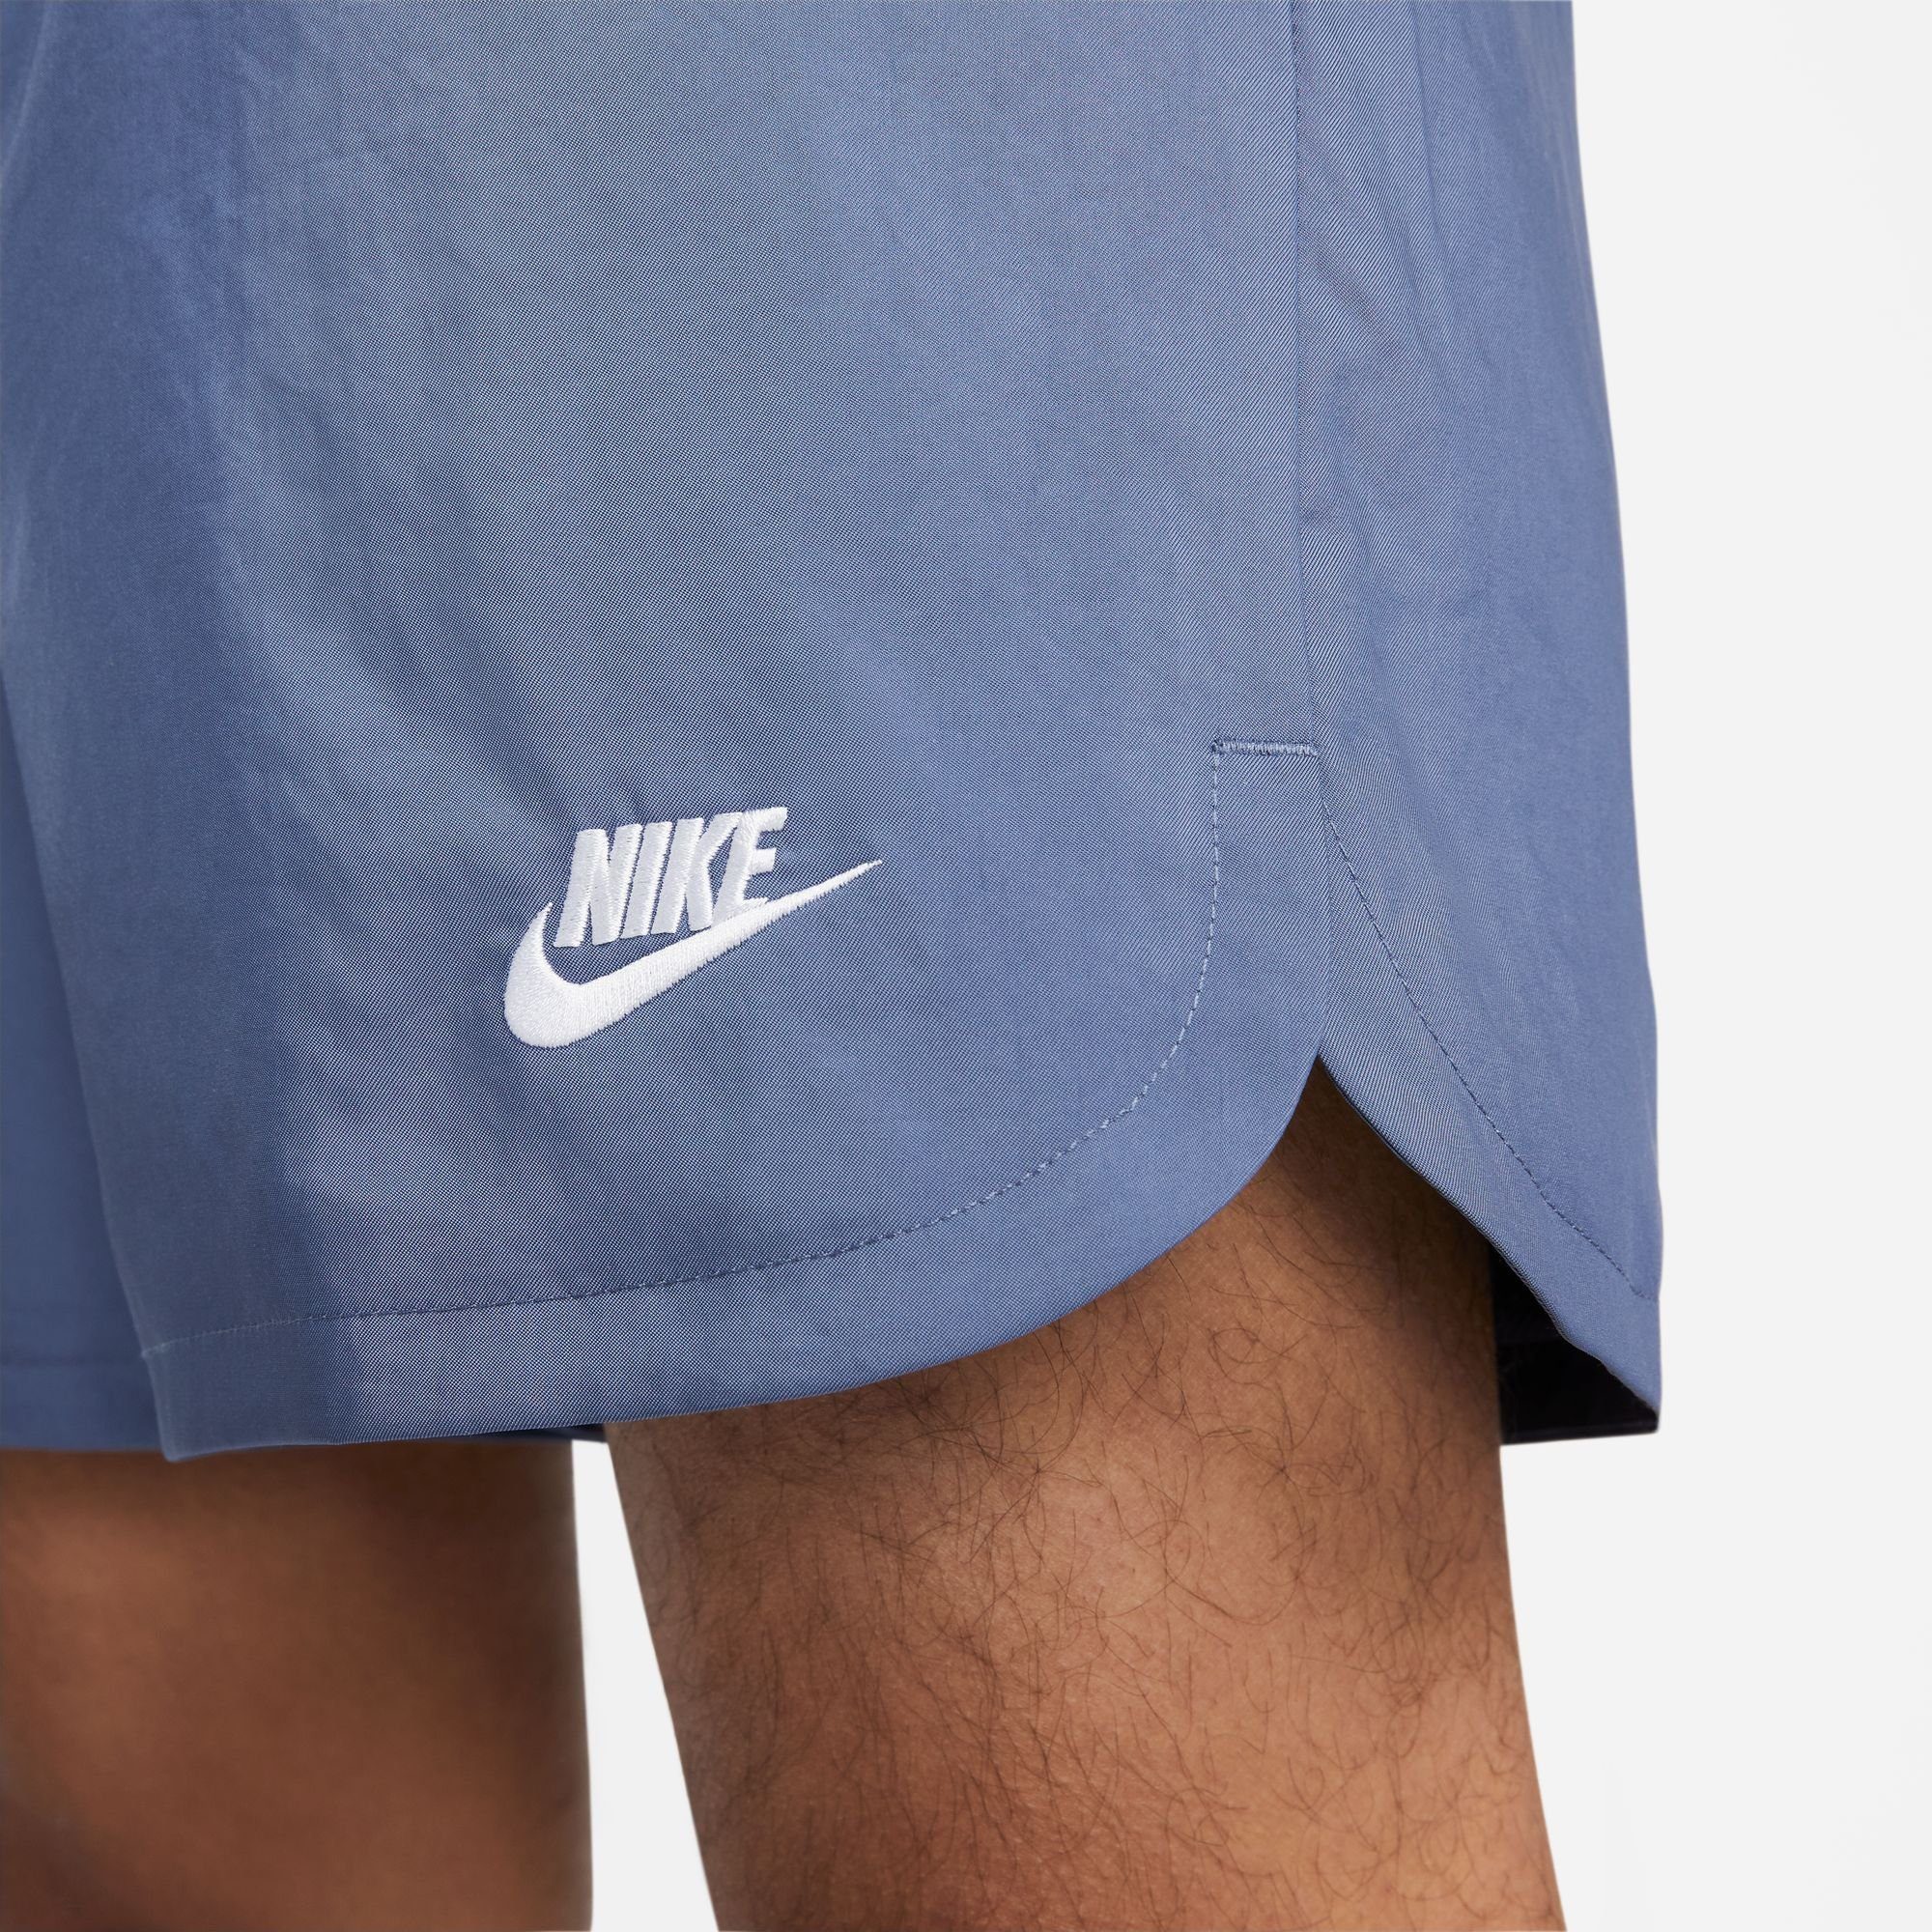 Lined Nike Shorts Shorts Men's Sportswear Essentials blau Woven Flow Sport